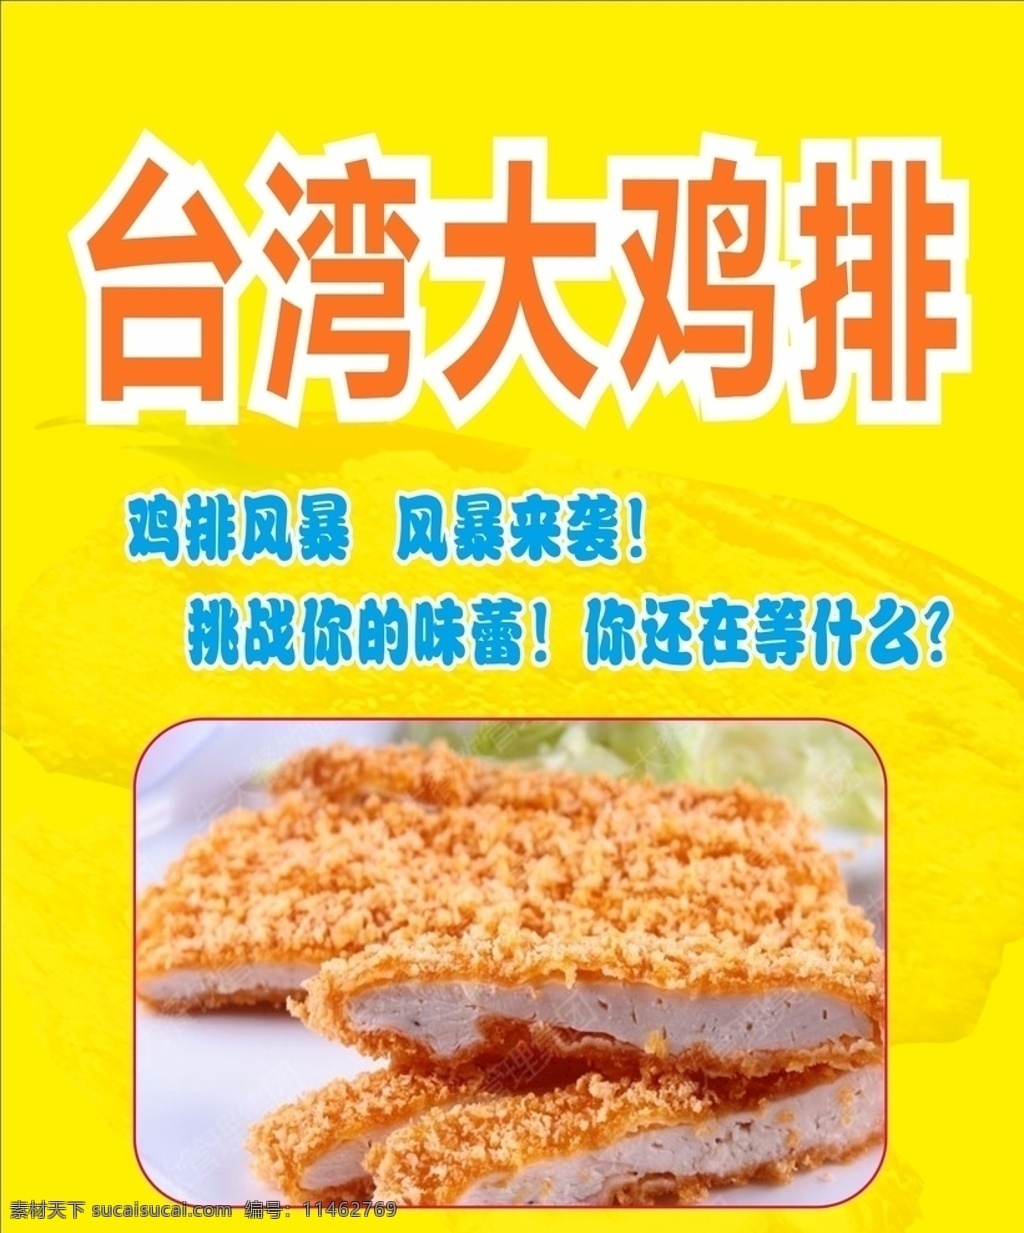 台湾大鸡排 鸡排 鸡排风暴 挑战 红红火火 生活百科 餐饮美食